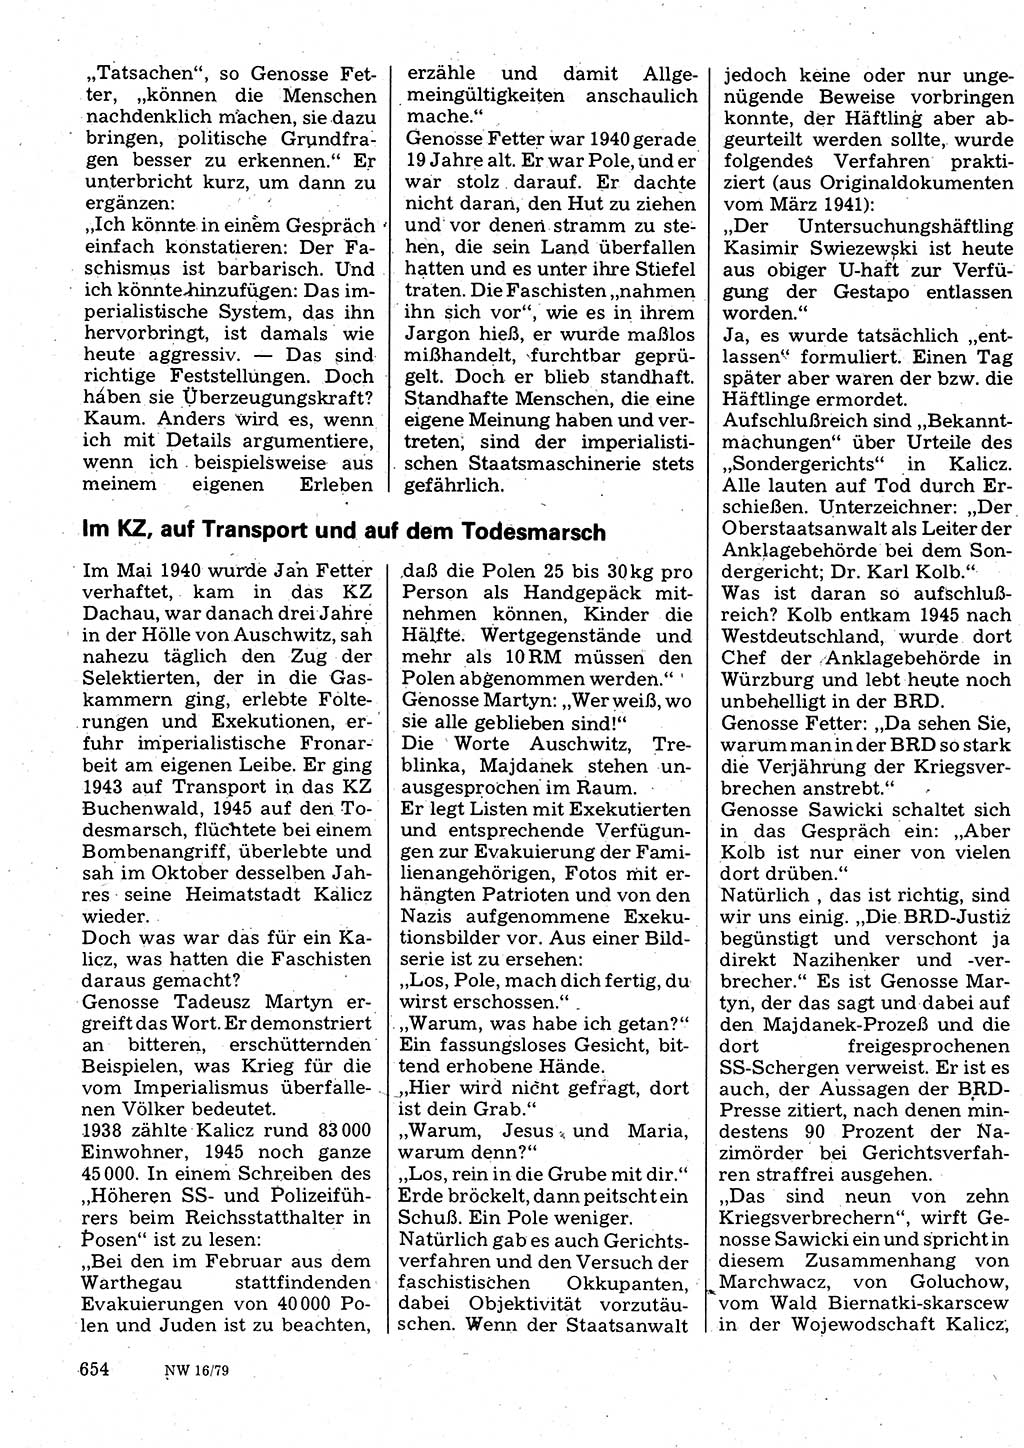 Neuer Weg (NW), Organ des Zentralkomitees (ZK) der SED (Sozialistische Einheitspartei Deutschlands) für Fragen des Parteilebens, 34. Jahrgang [Deutsche Demokratische Republik (DDR)] 1979, Seite 654 (NW ZK SED DDR 1979, S. 654)